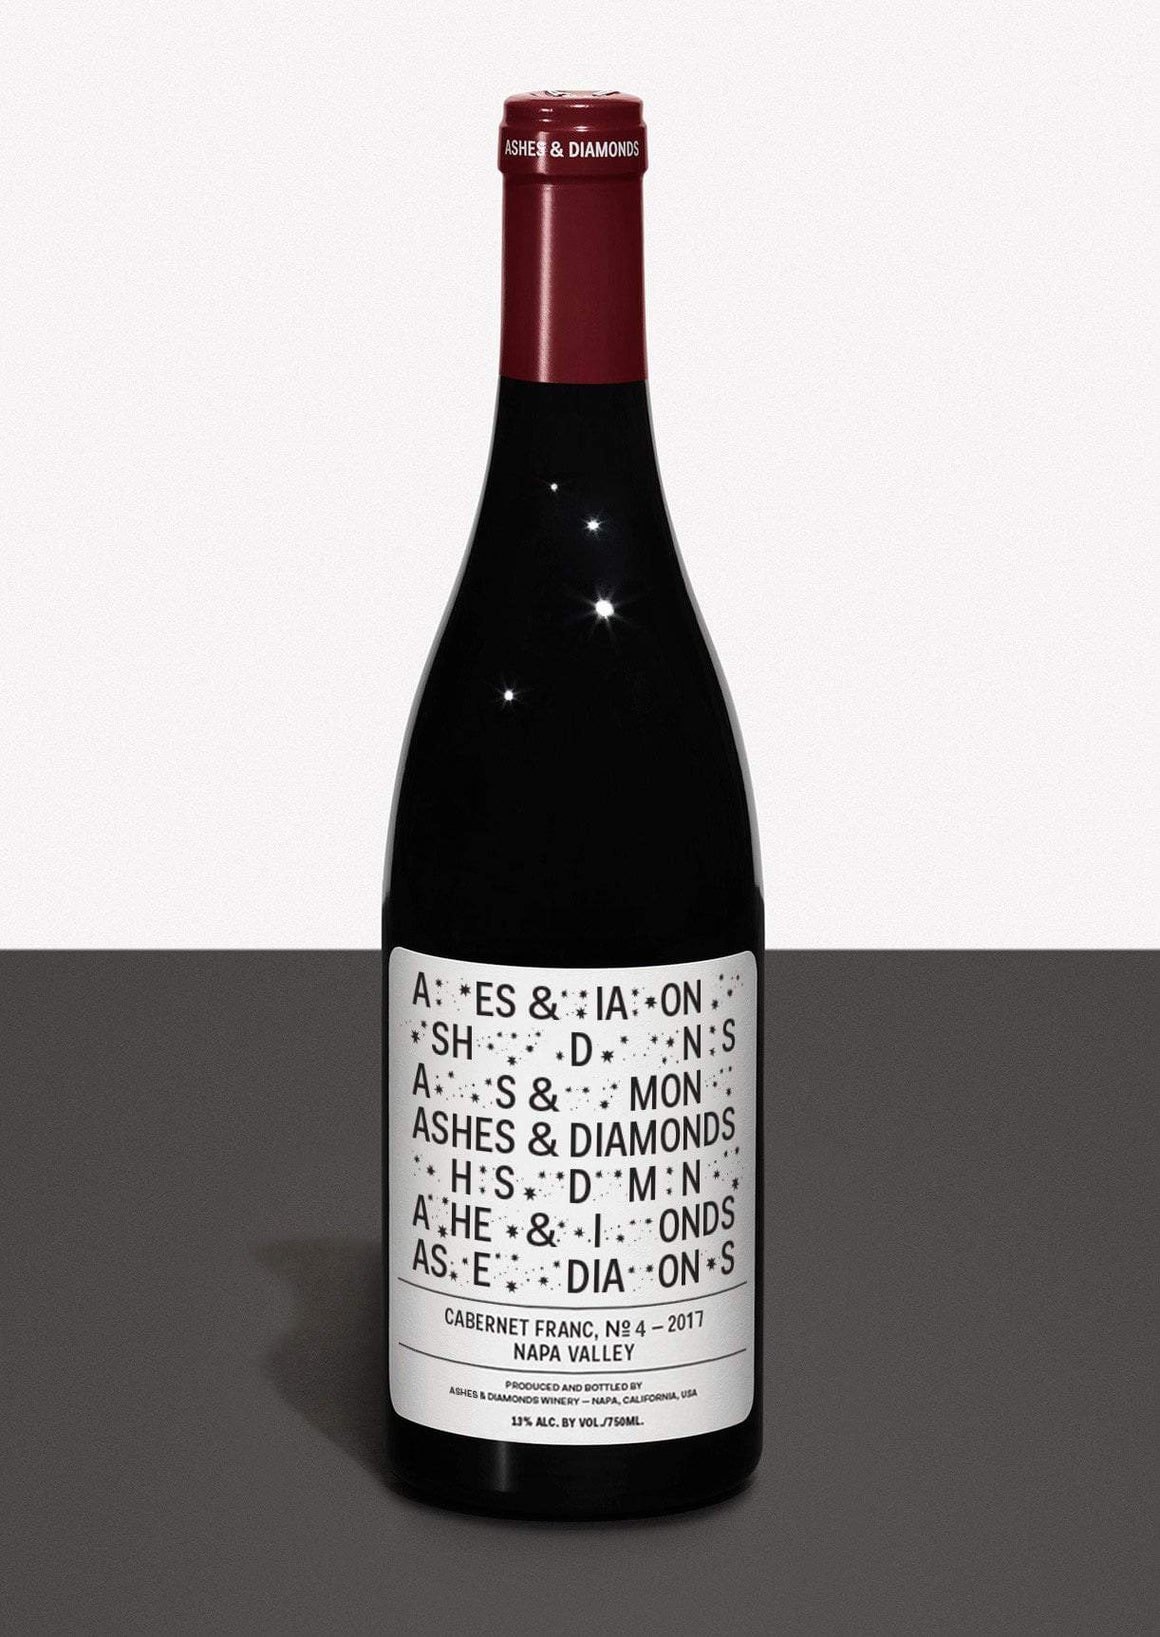 Pinnacle Imports Wine Ashes & Diamonds Cabernet Franc